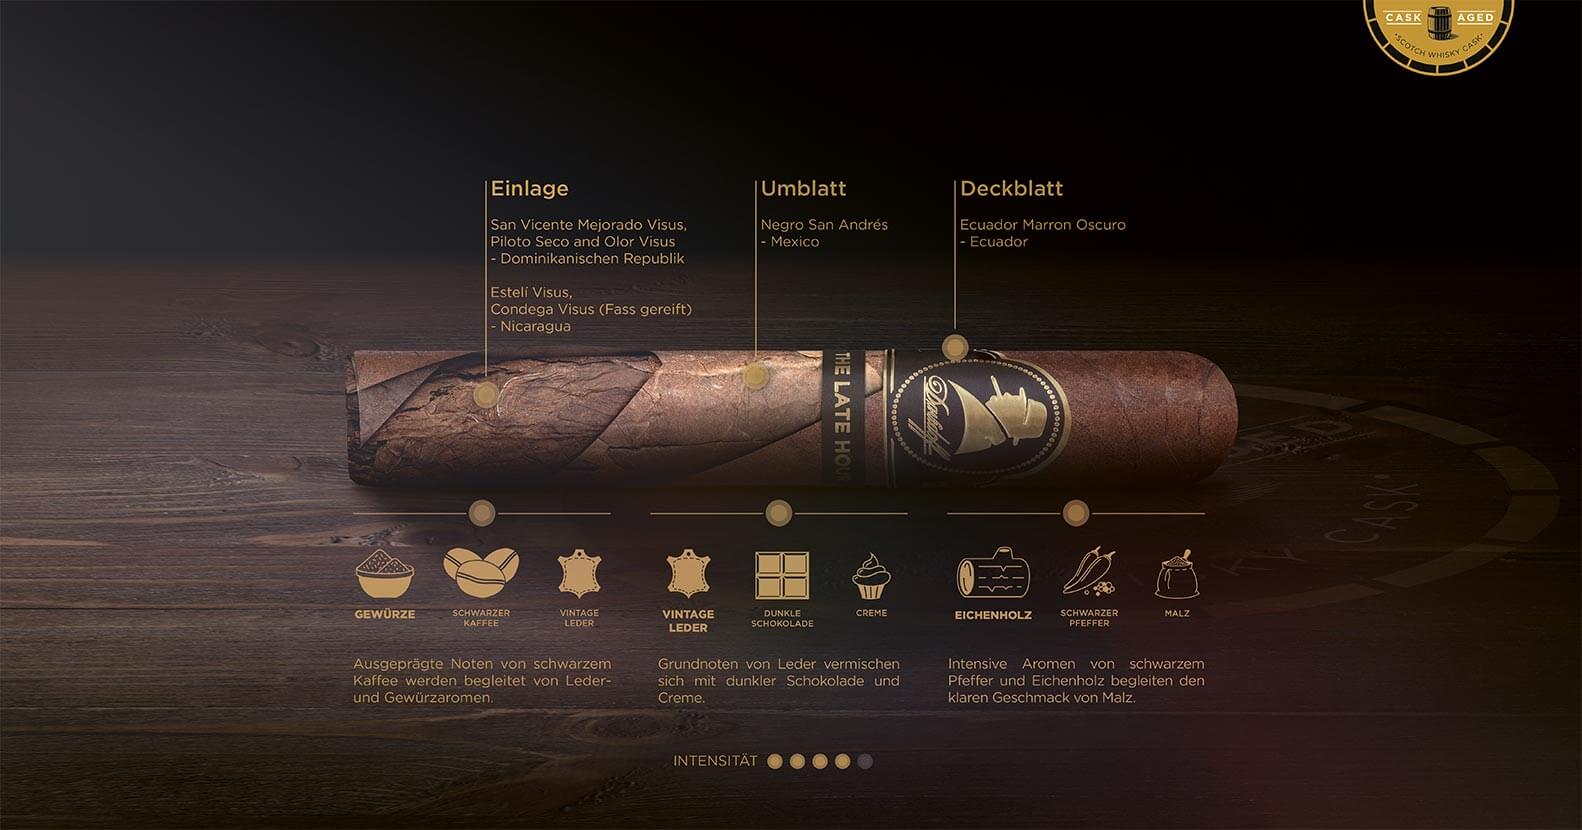 Infografik einer Davidoff Winston Churchill Late Hour Series Zigarre mit allen verwendeten Tabaksorten für Einlage, Umblatt und Deckblatt und detaillierter Geschmackserklärung